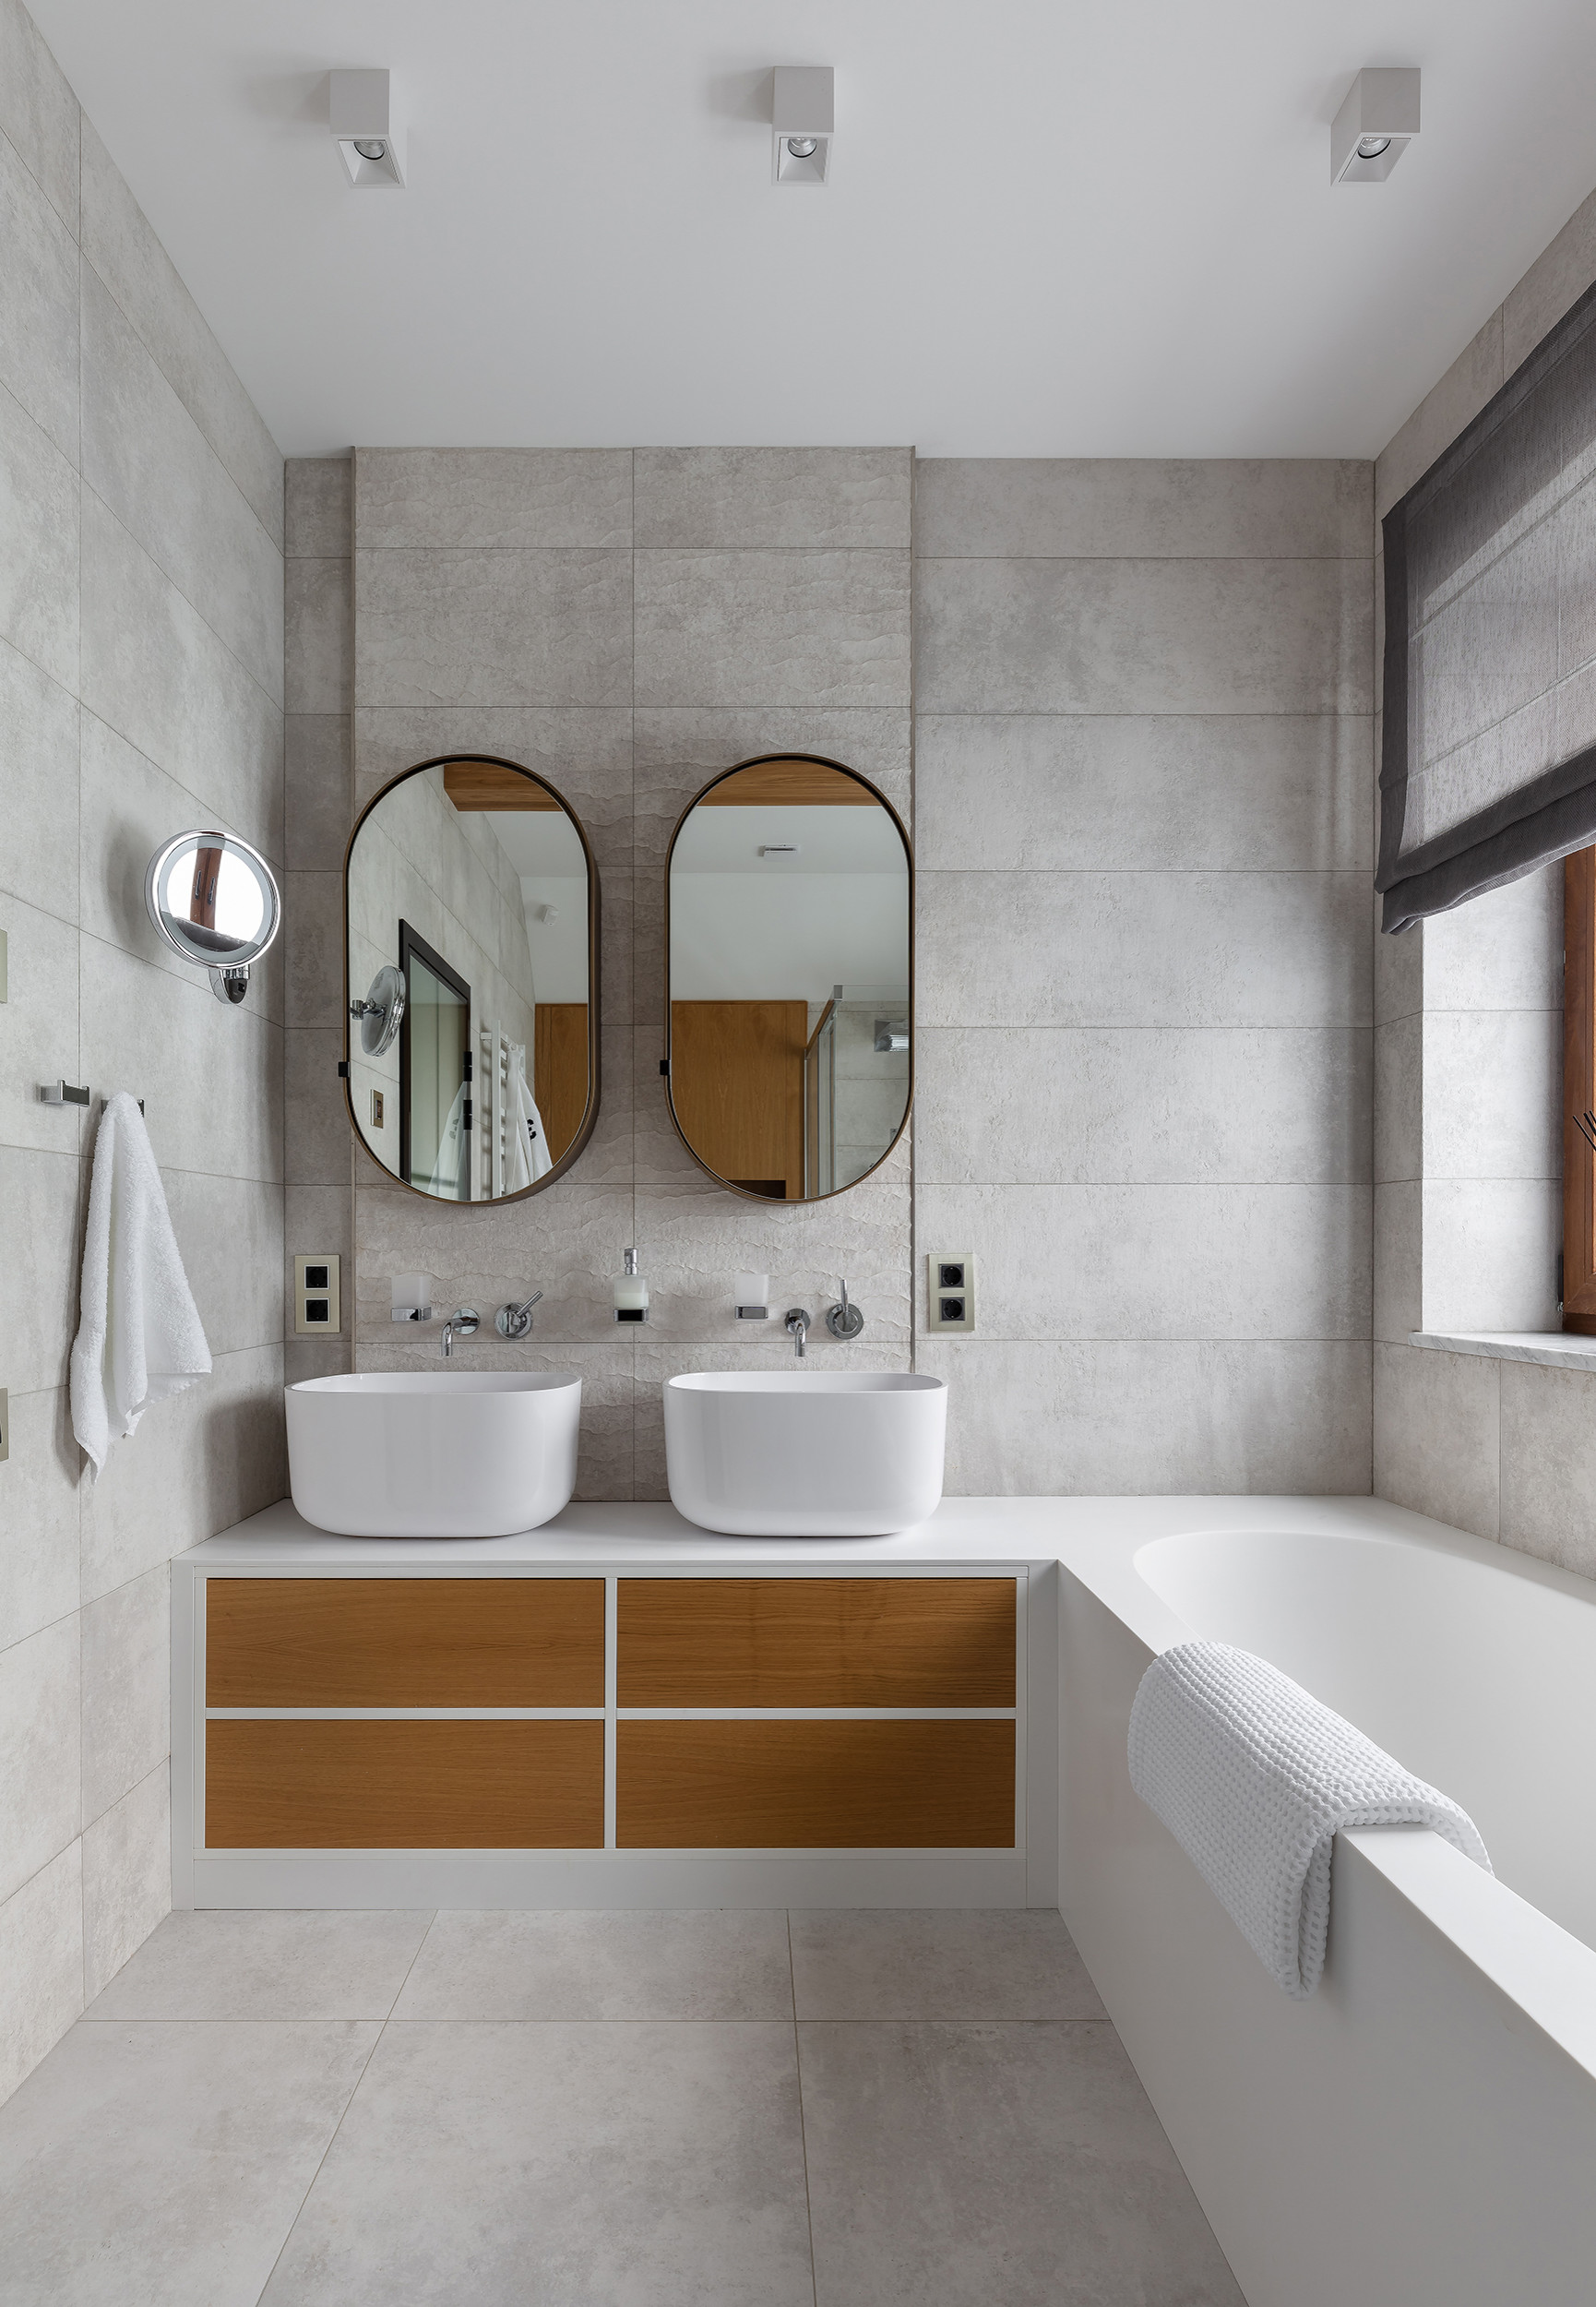 Дизайн ванной комнаты в бирюзовом цвете - интересные идеи оформления